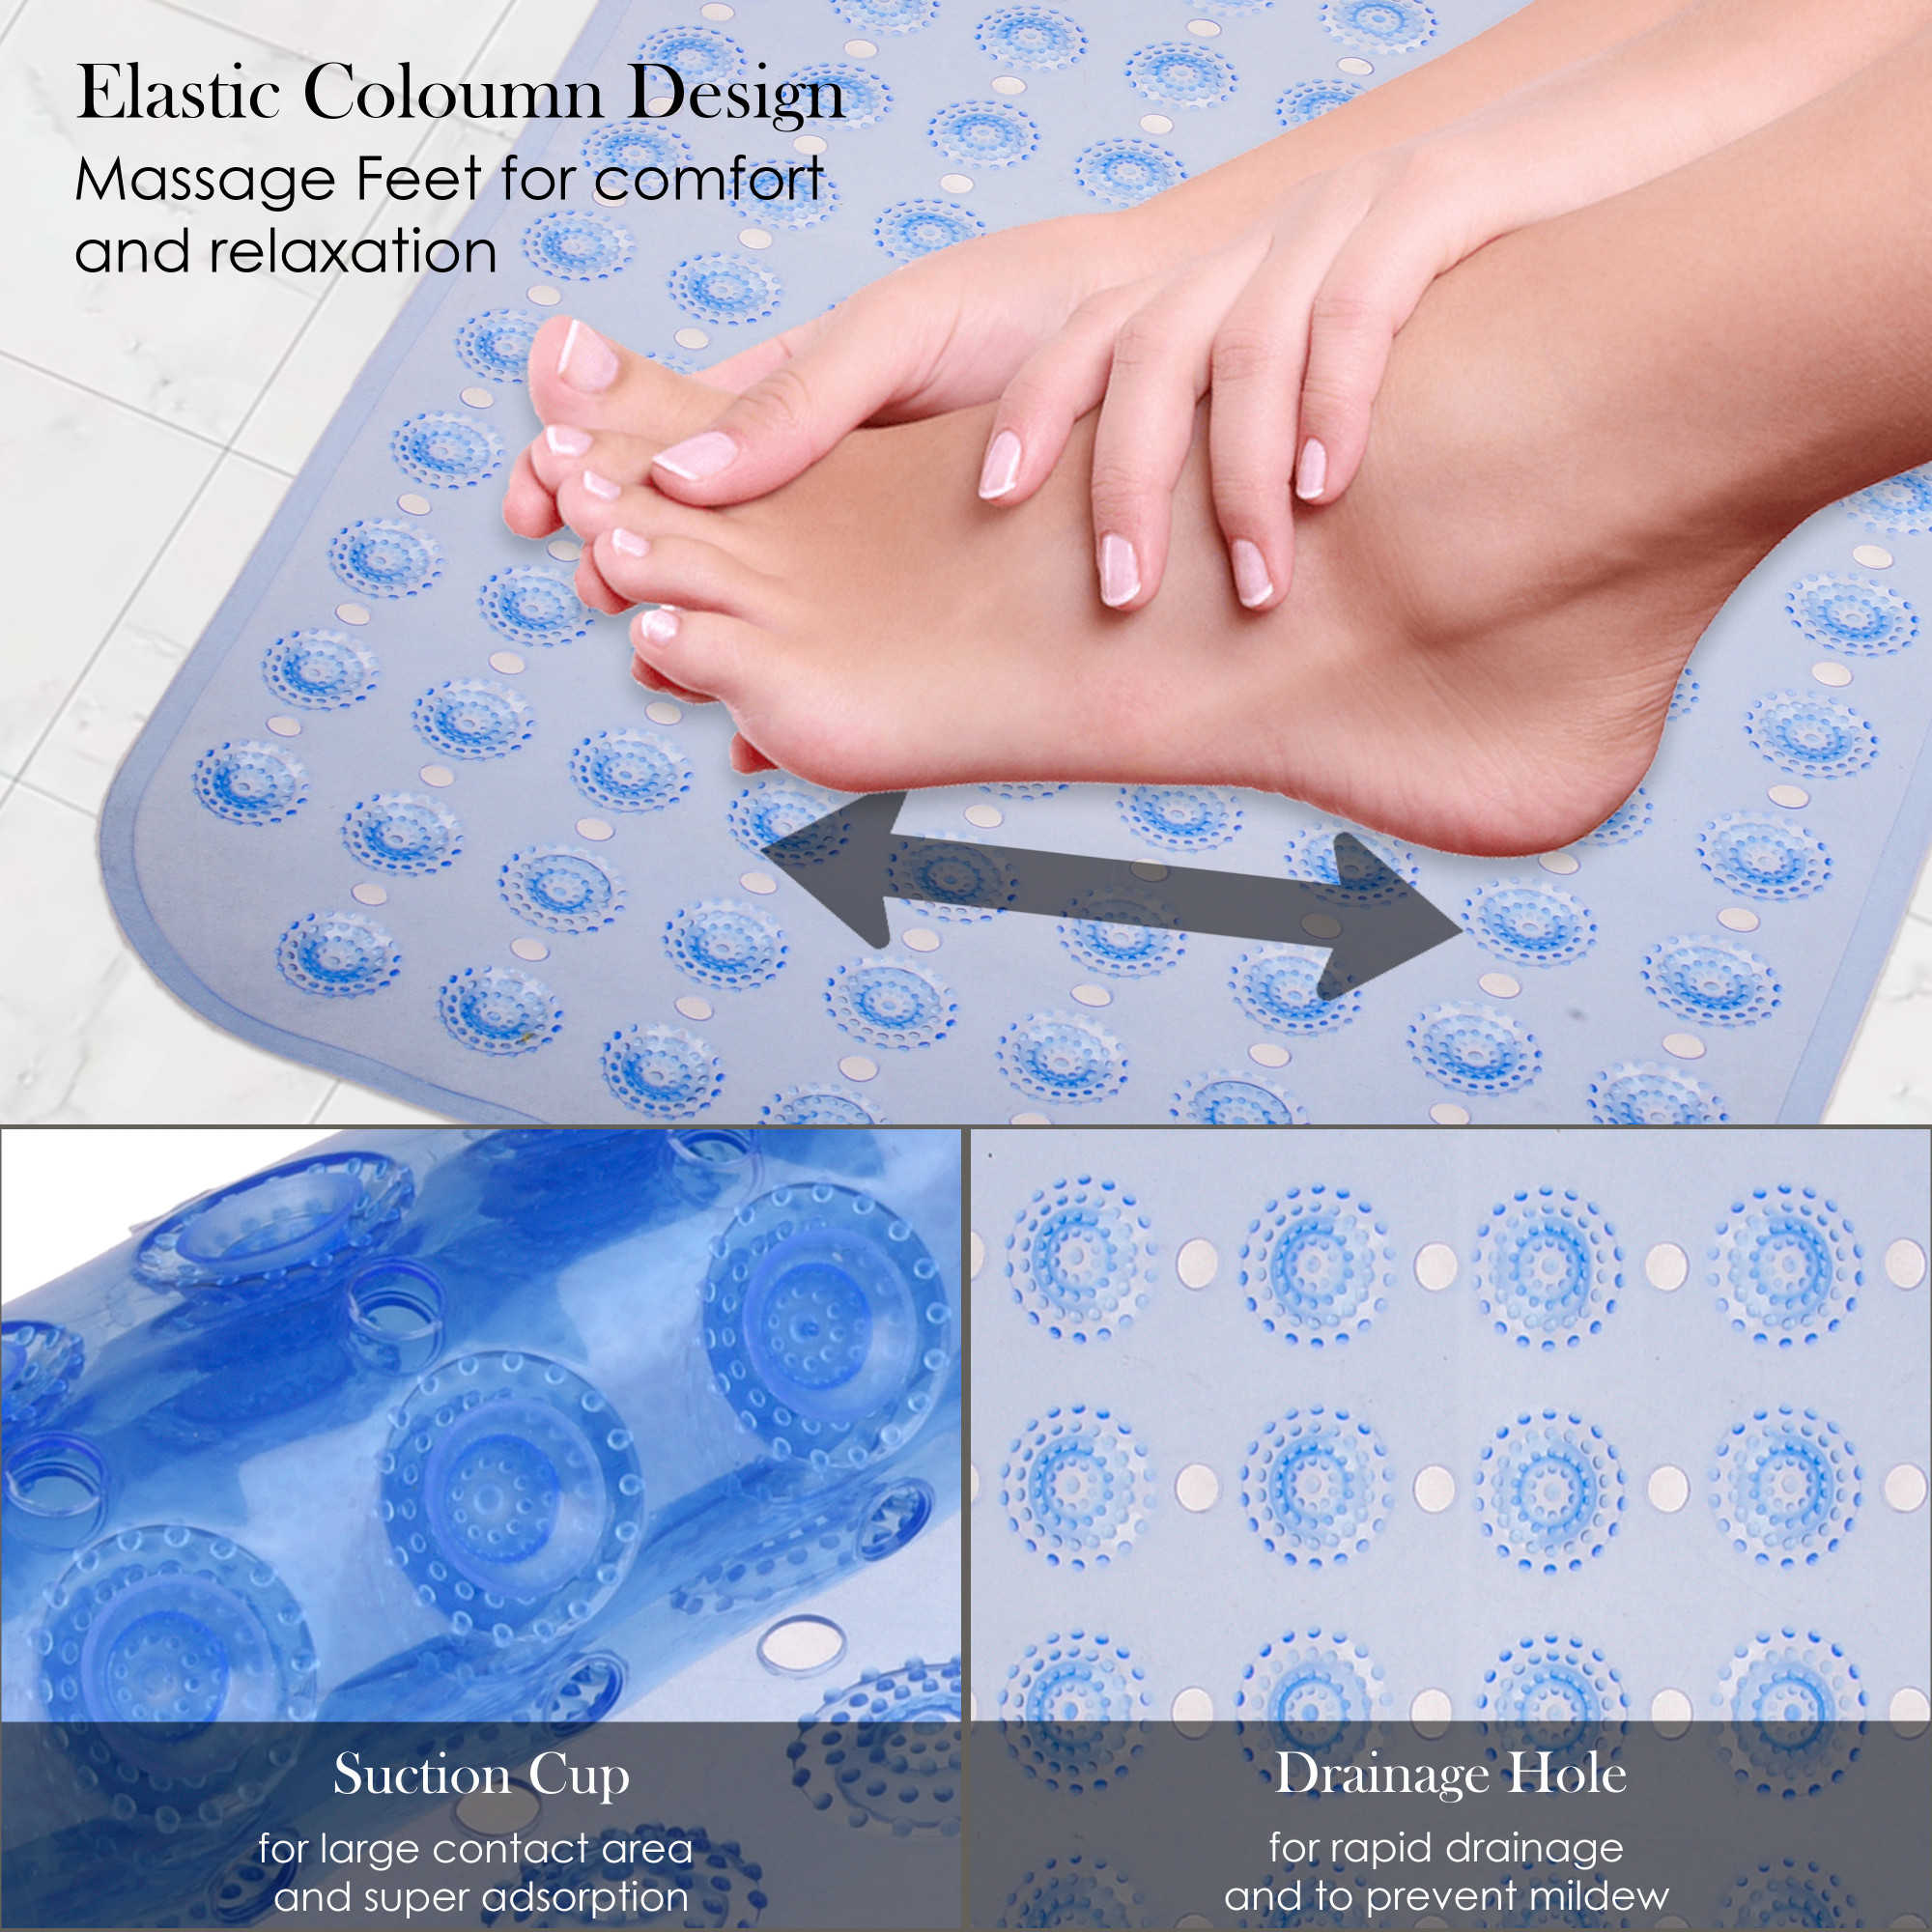 Kuber Industries Bath Mat | PVC Bathroom Mat | Shower Bath Mat | Transparent Round Floor Tub Mat | Foot Massager Mat | Anti-Skid Shower Mat with Drain Holes | Blue